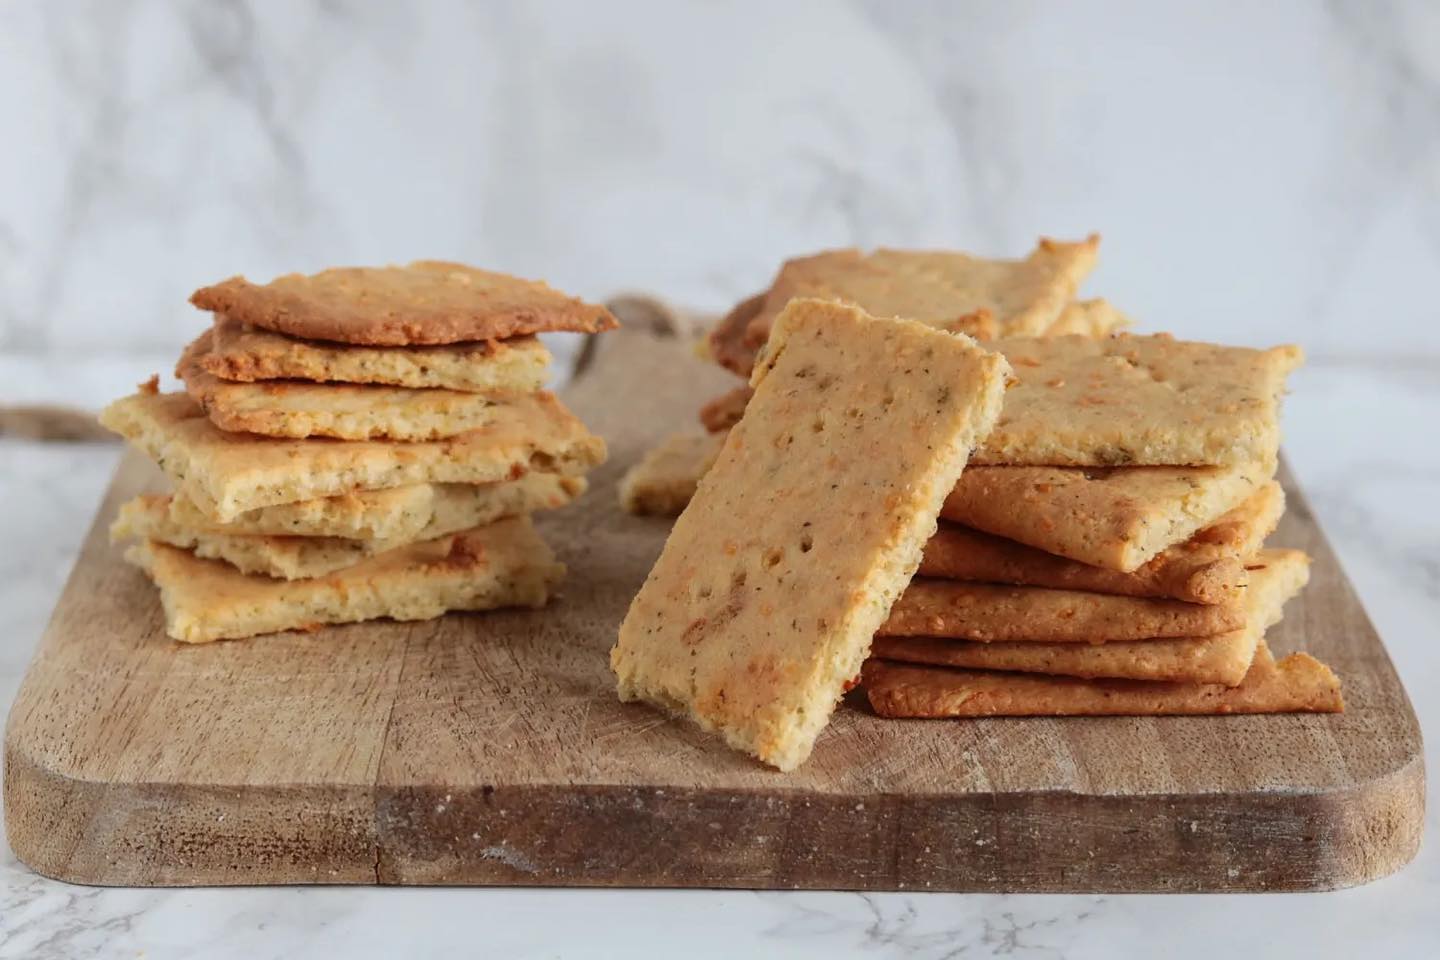 Goedemorgen! ❤️ Het is weer maandag, een mooie moment om wat lekkere basics te delen! Deze crackers bijvoorbeeld zijn heerlijk om op voorraad te hebben. Lekker voor het ontbijt of tussendoor met je favoriete dip of belegje! 🥰 Je geeft er ook makkelijk je eigen twist aan door kruiden, pitjes kf zaadjes te gebruiken naar keuze 👩‍🍳 Het recept vind je op mijn website onder de naam “crackers met kaas”. Fijne maandag! X 

#koolhydraatarm #oanhskitchen #lowcarb #keto